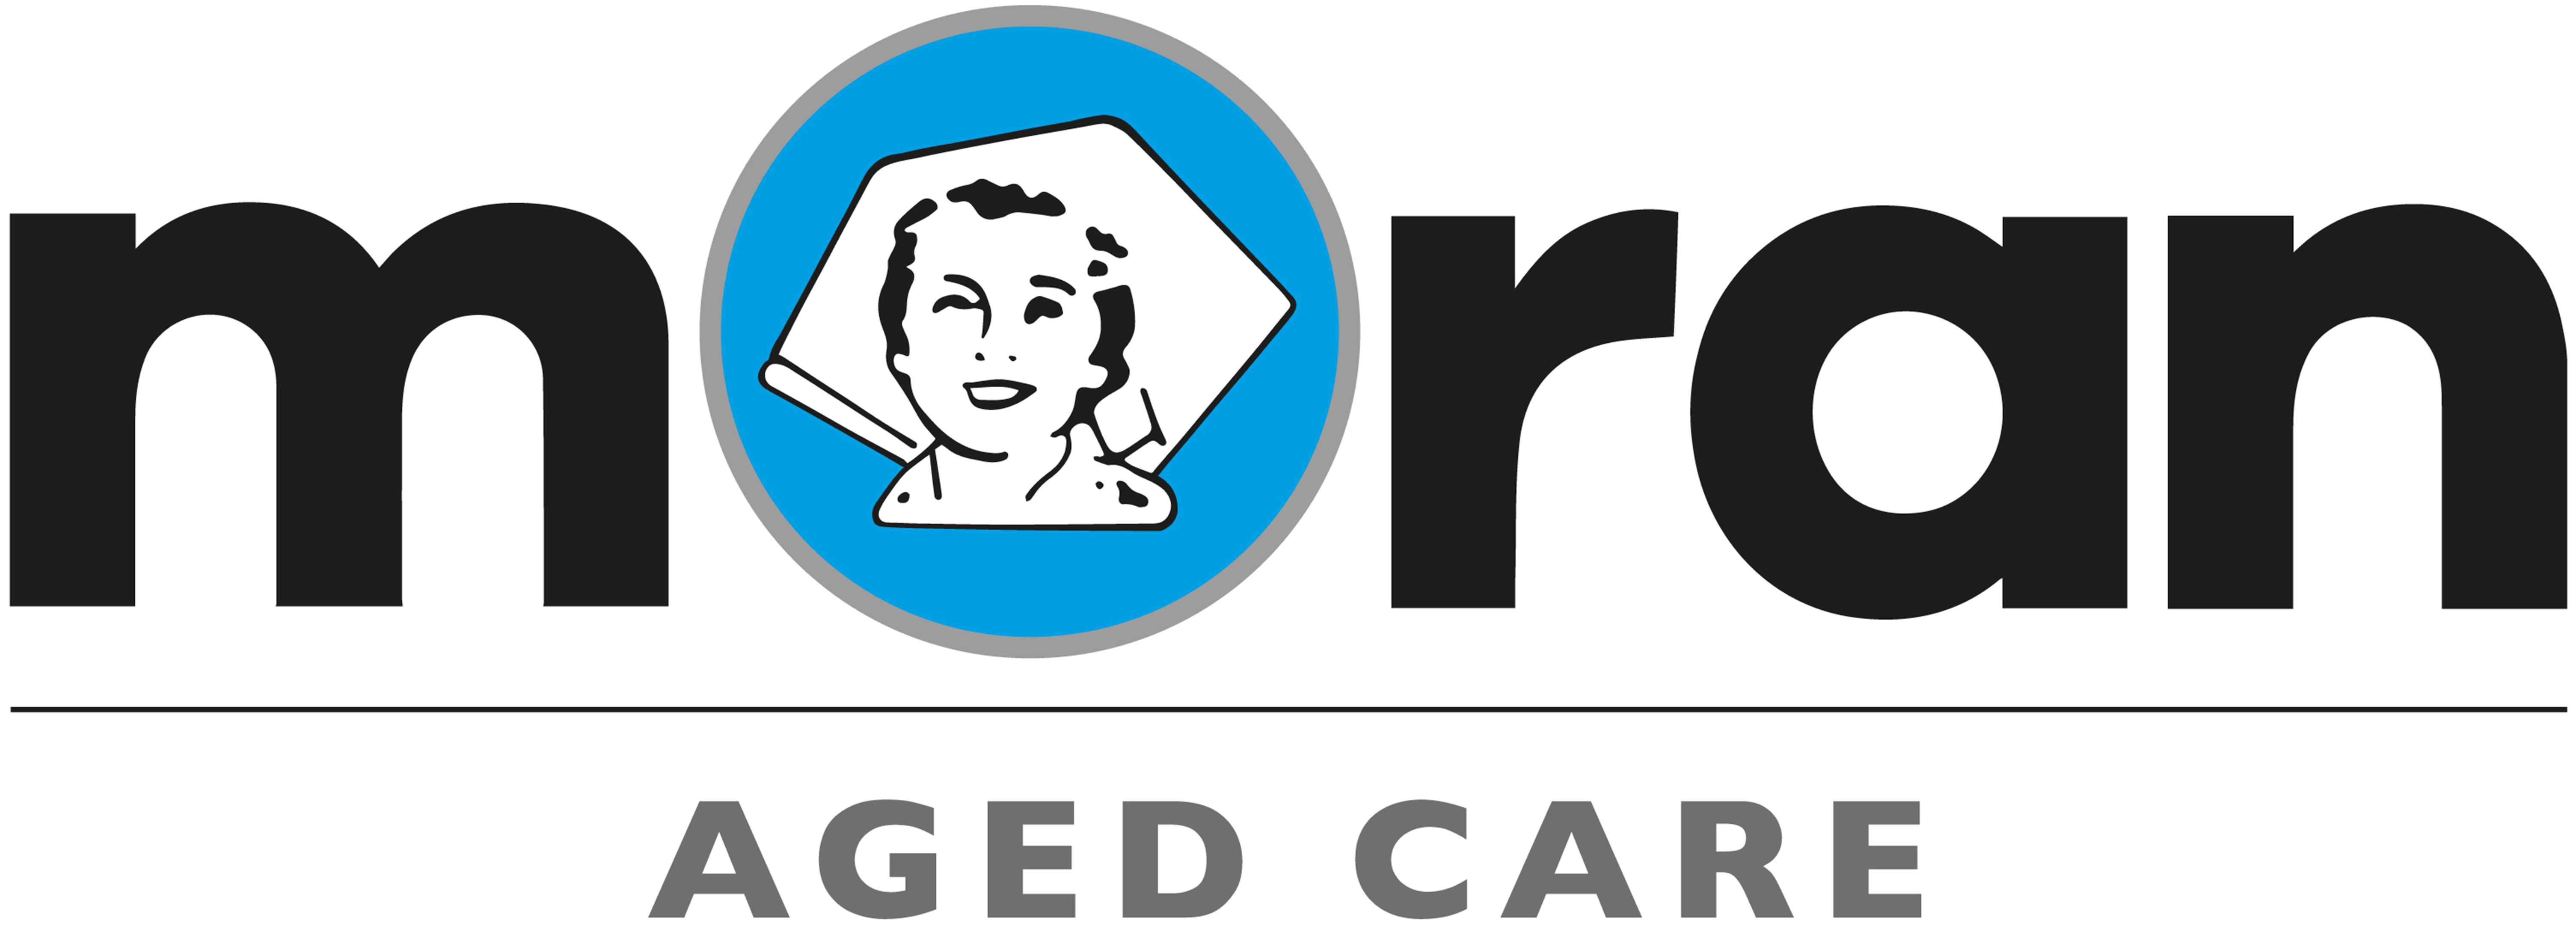 Moran Aged Care logo in colour.